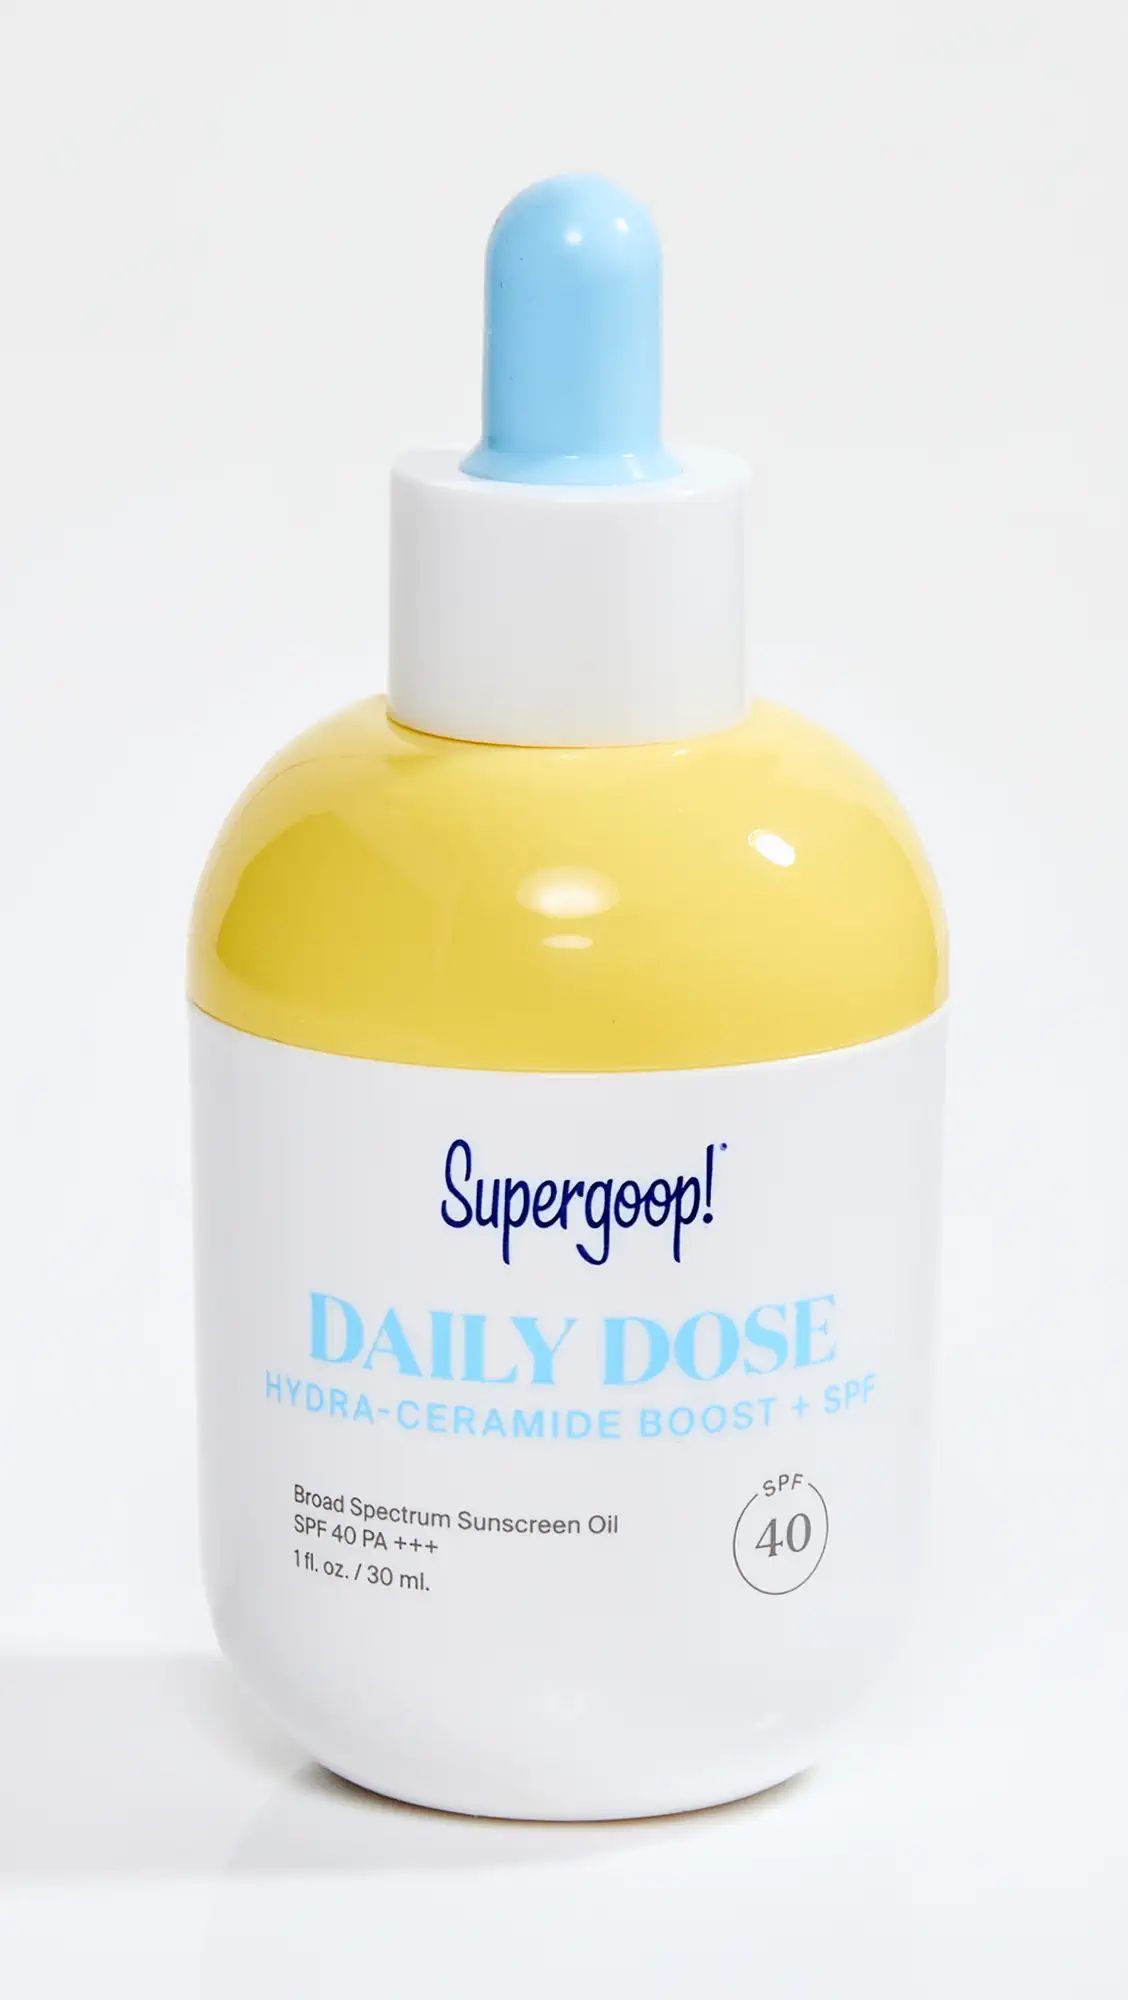 Supergoop! Daily Dose Hydra-Ceramide Boost + SPF 40 | Shopbop | Shopbop